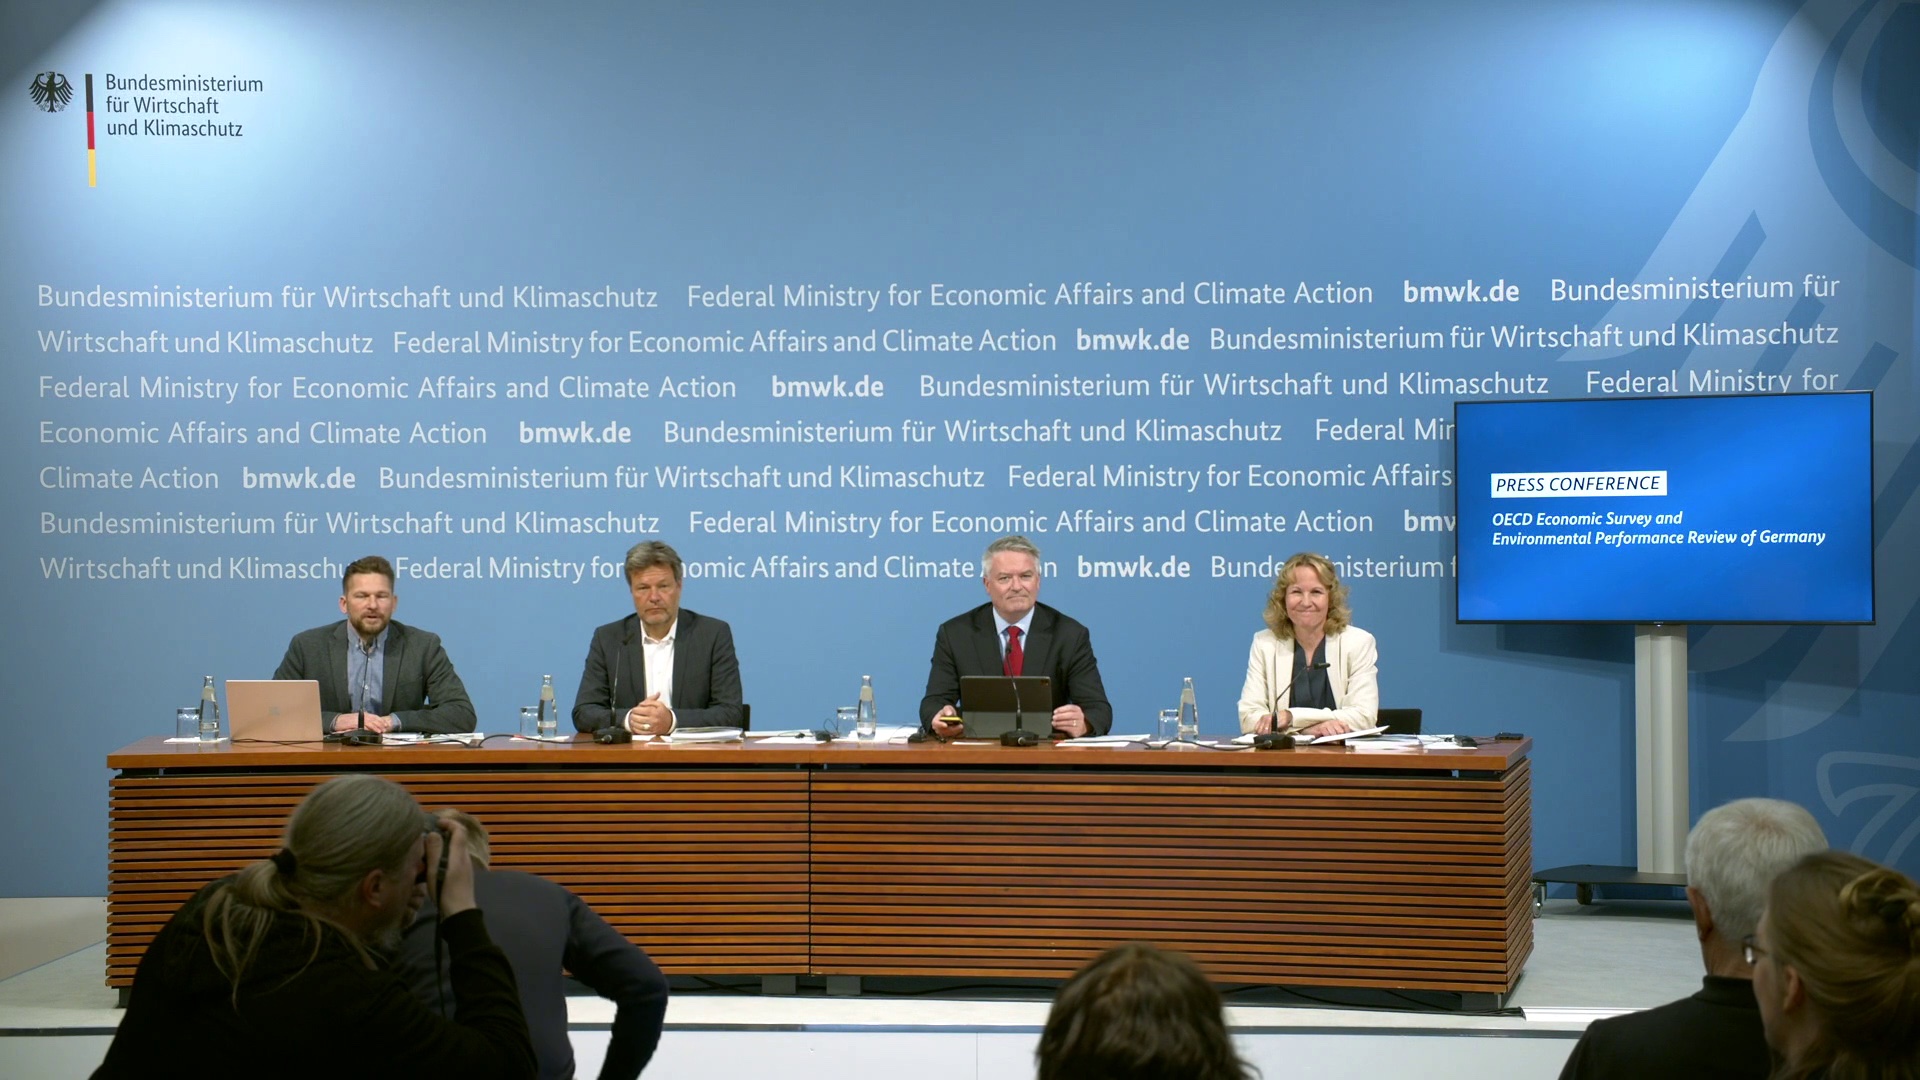 Gemeinsame Pressekonferenz zur Übergabe des OECD-Wirtschaftsberichts und -Umweltprüfberichts